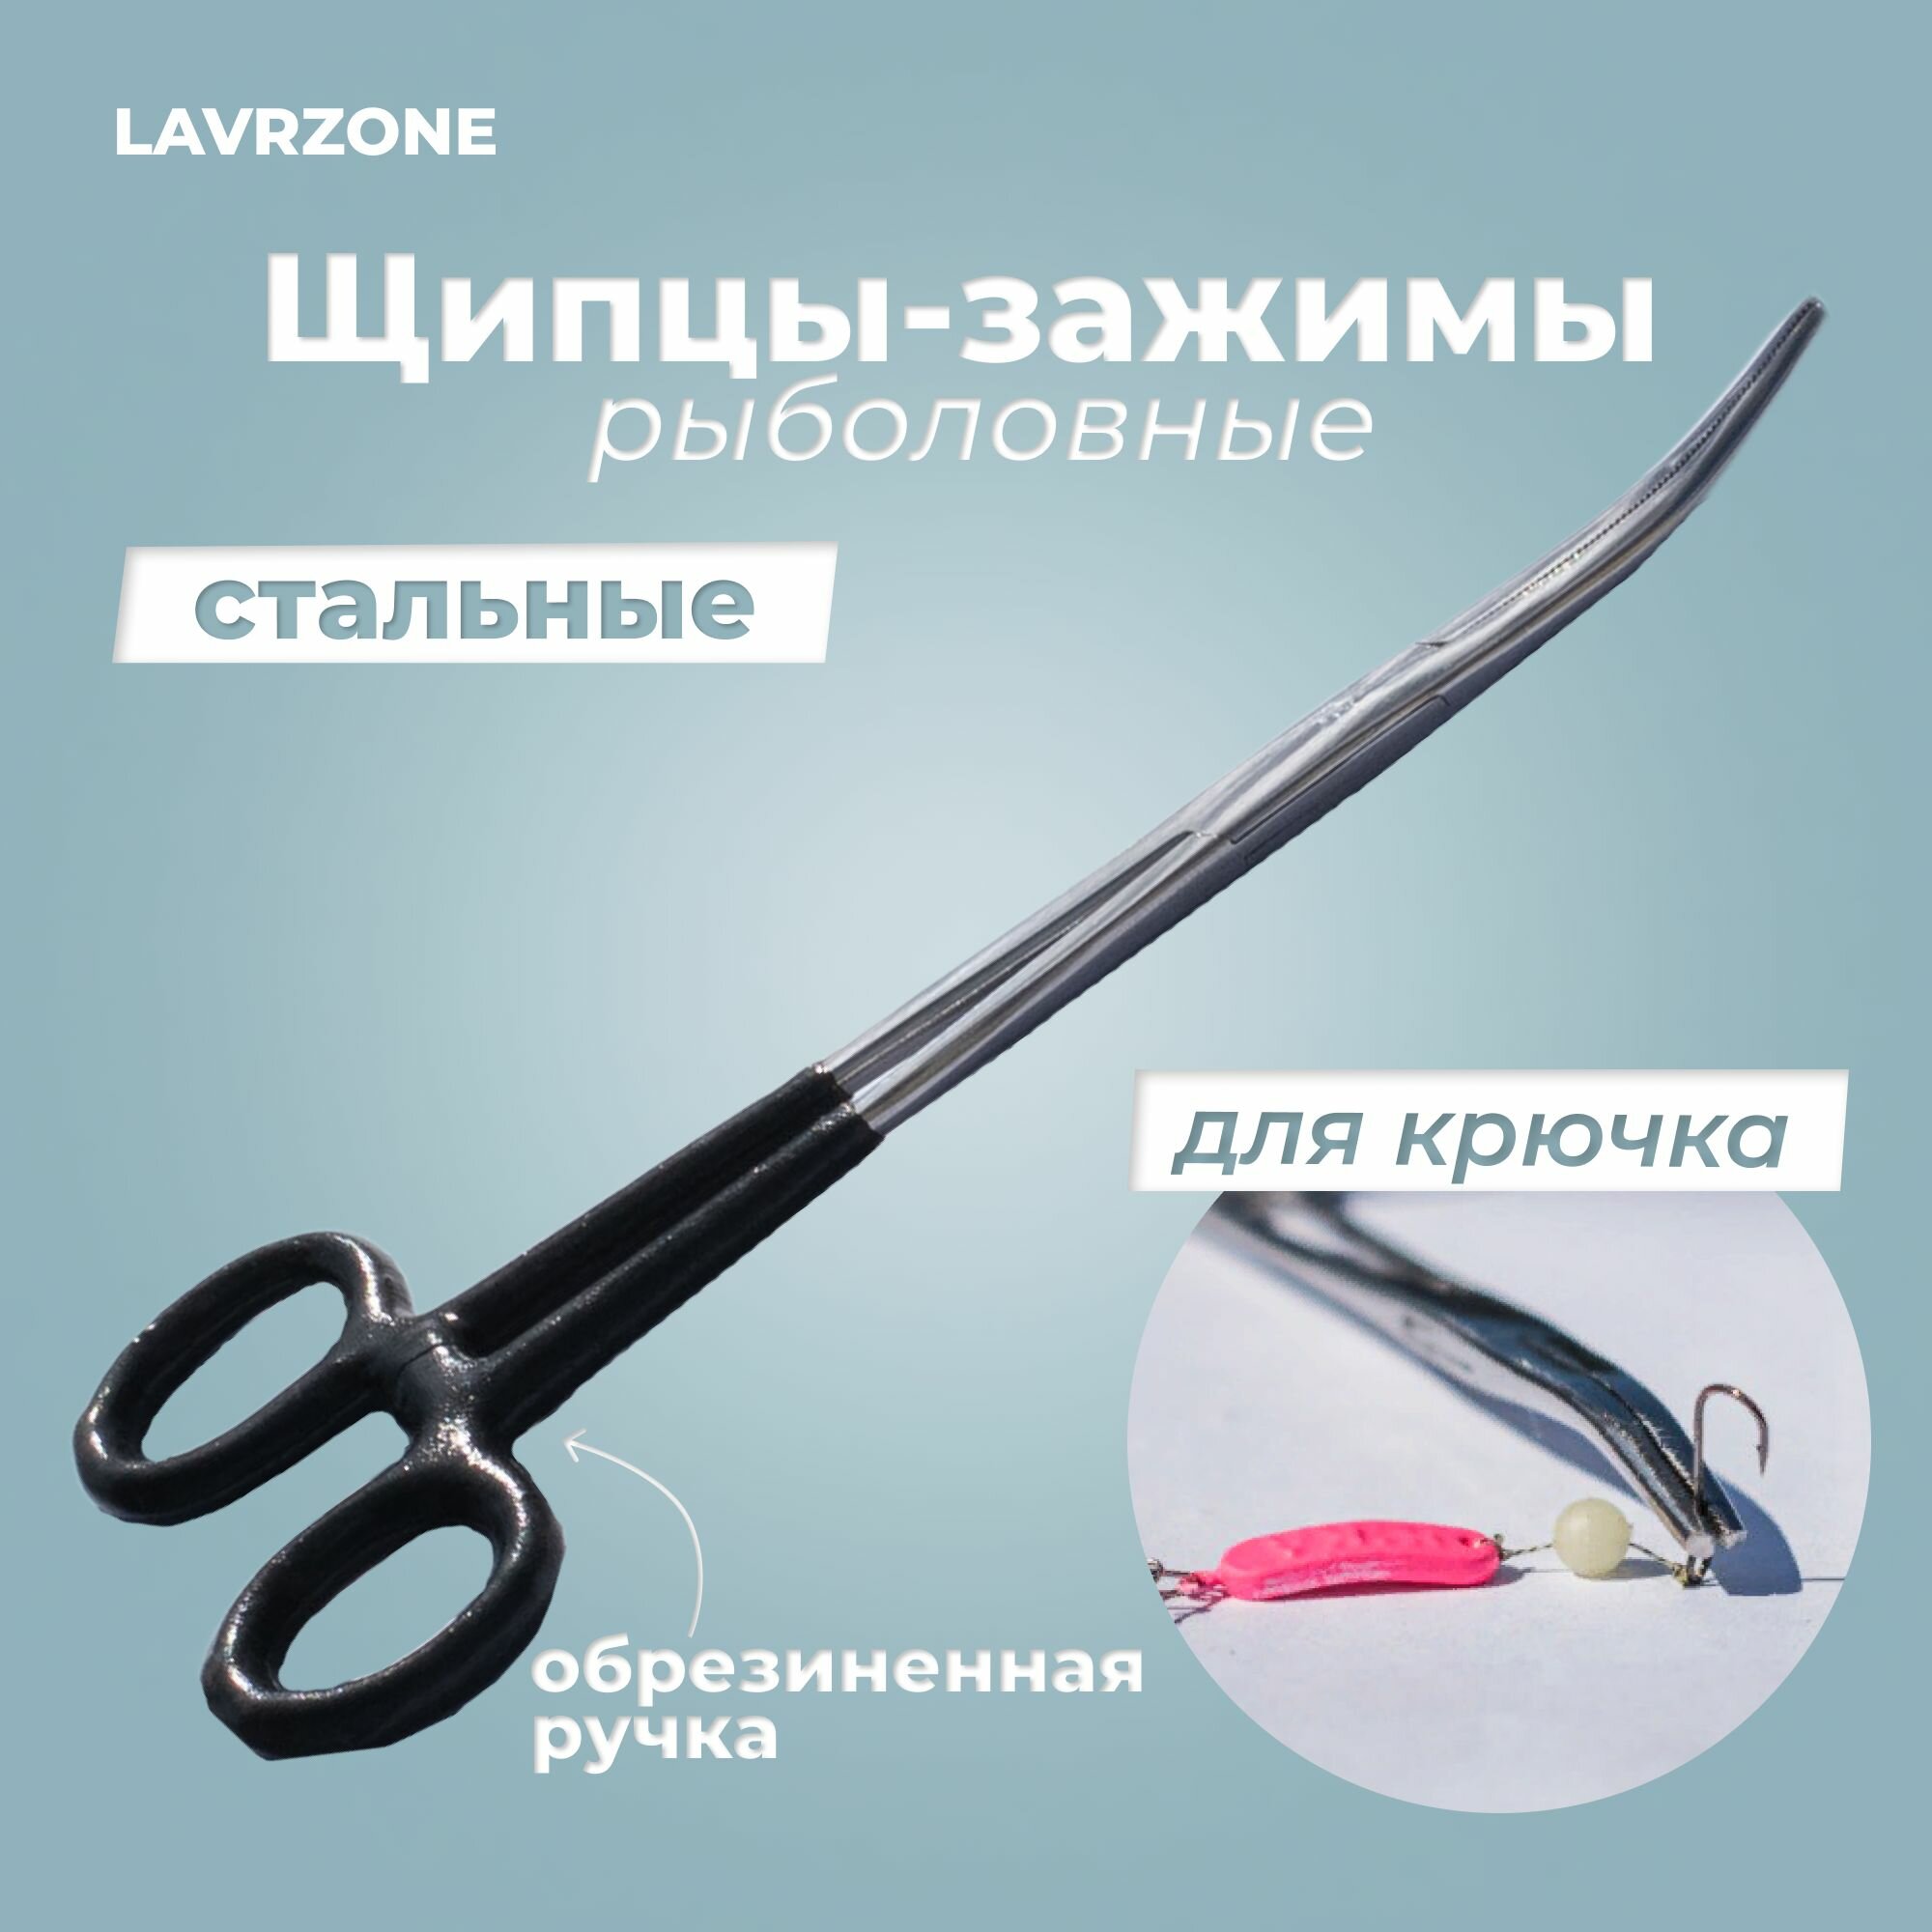 Щипцы - экстрактор с обрезиненной ручкой для рыбалки зажимы рыболовные LAVRZONE для крючка (зажим, корнцанг, экстрактор) с фиксатором стальные